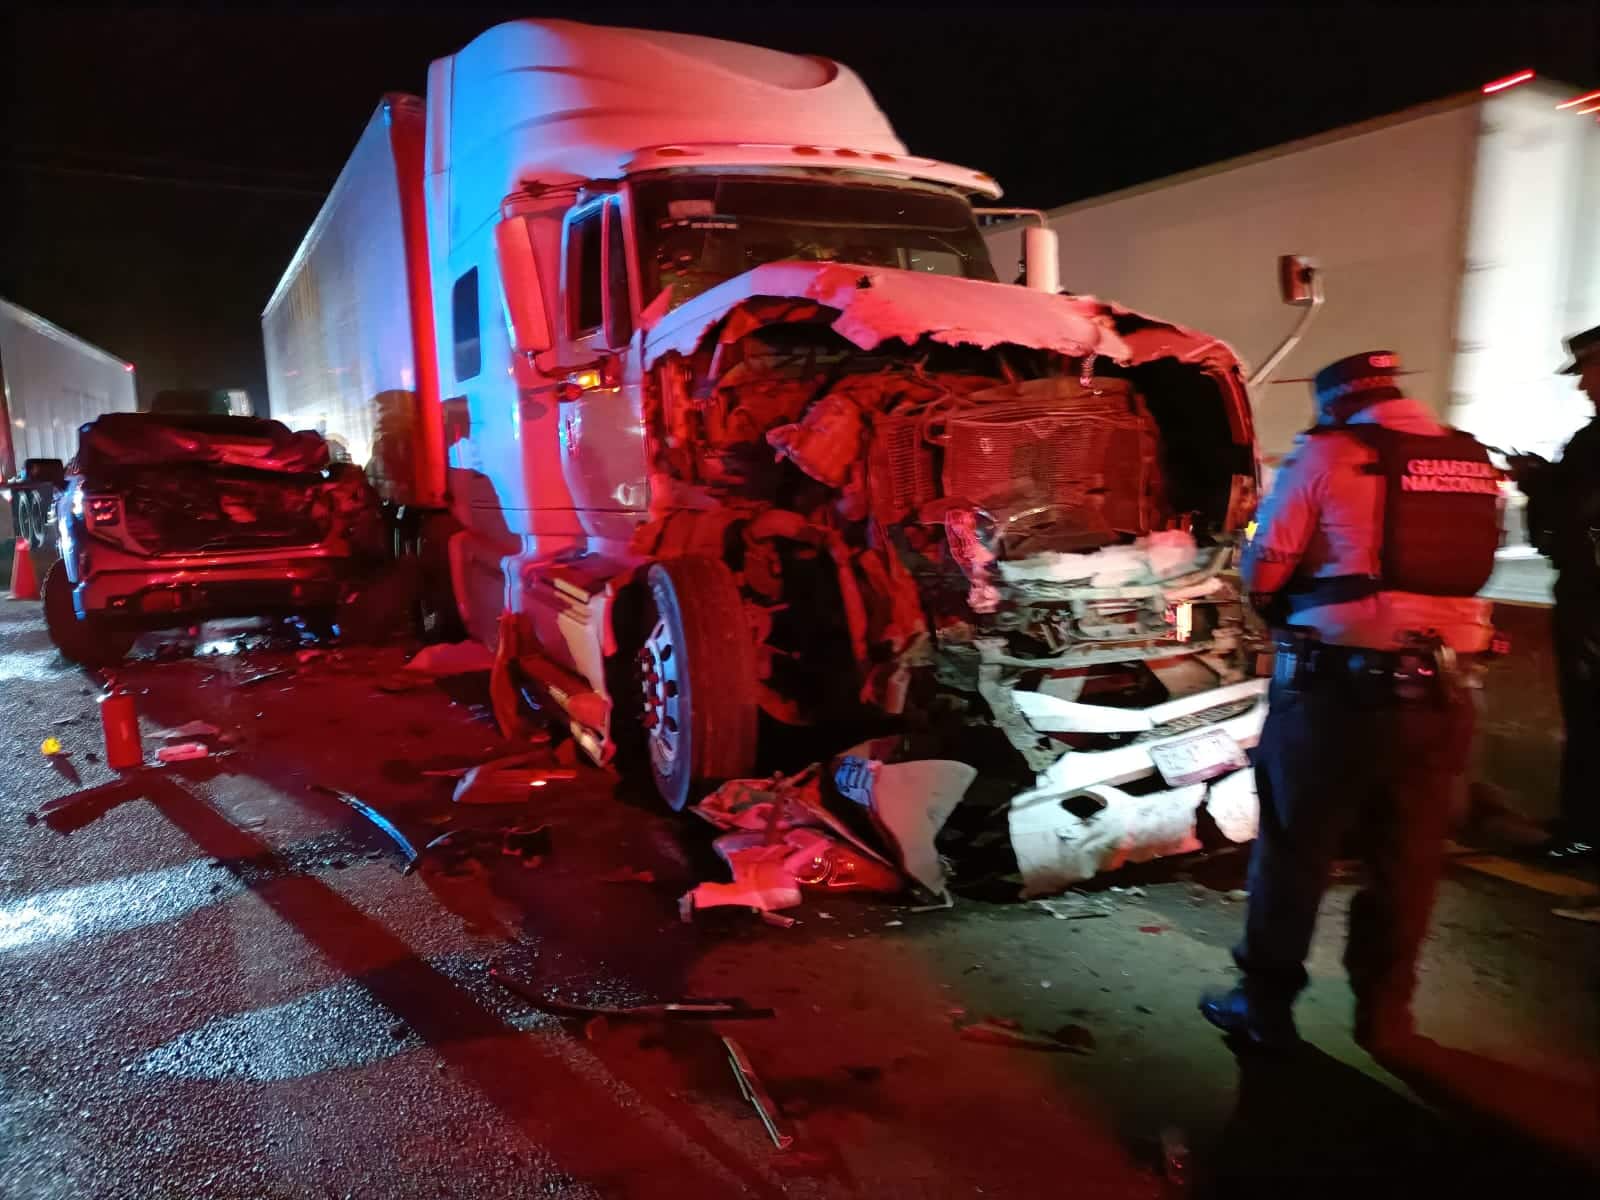 Tráiler y camioneta con severos daños materiales en la autopista Benito Juárez, La Costera